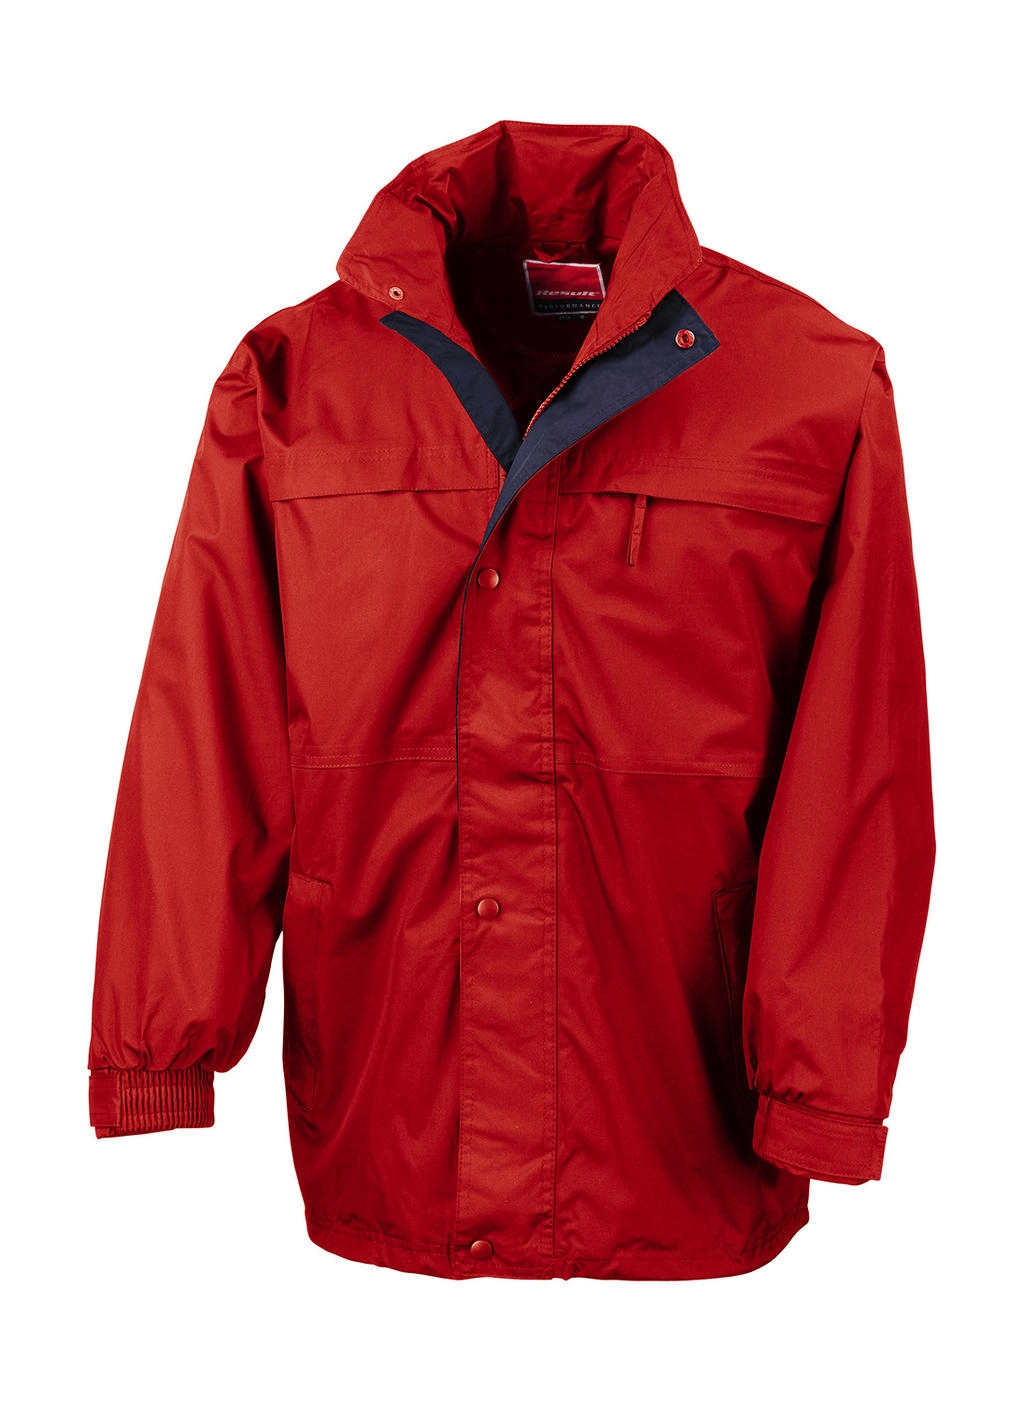 Mid-Season Jacket zum Besticken und Bedrucken in der Farbe Red/Navy mit Ihren Logo, Schriftzug oder Motiv.